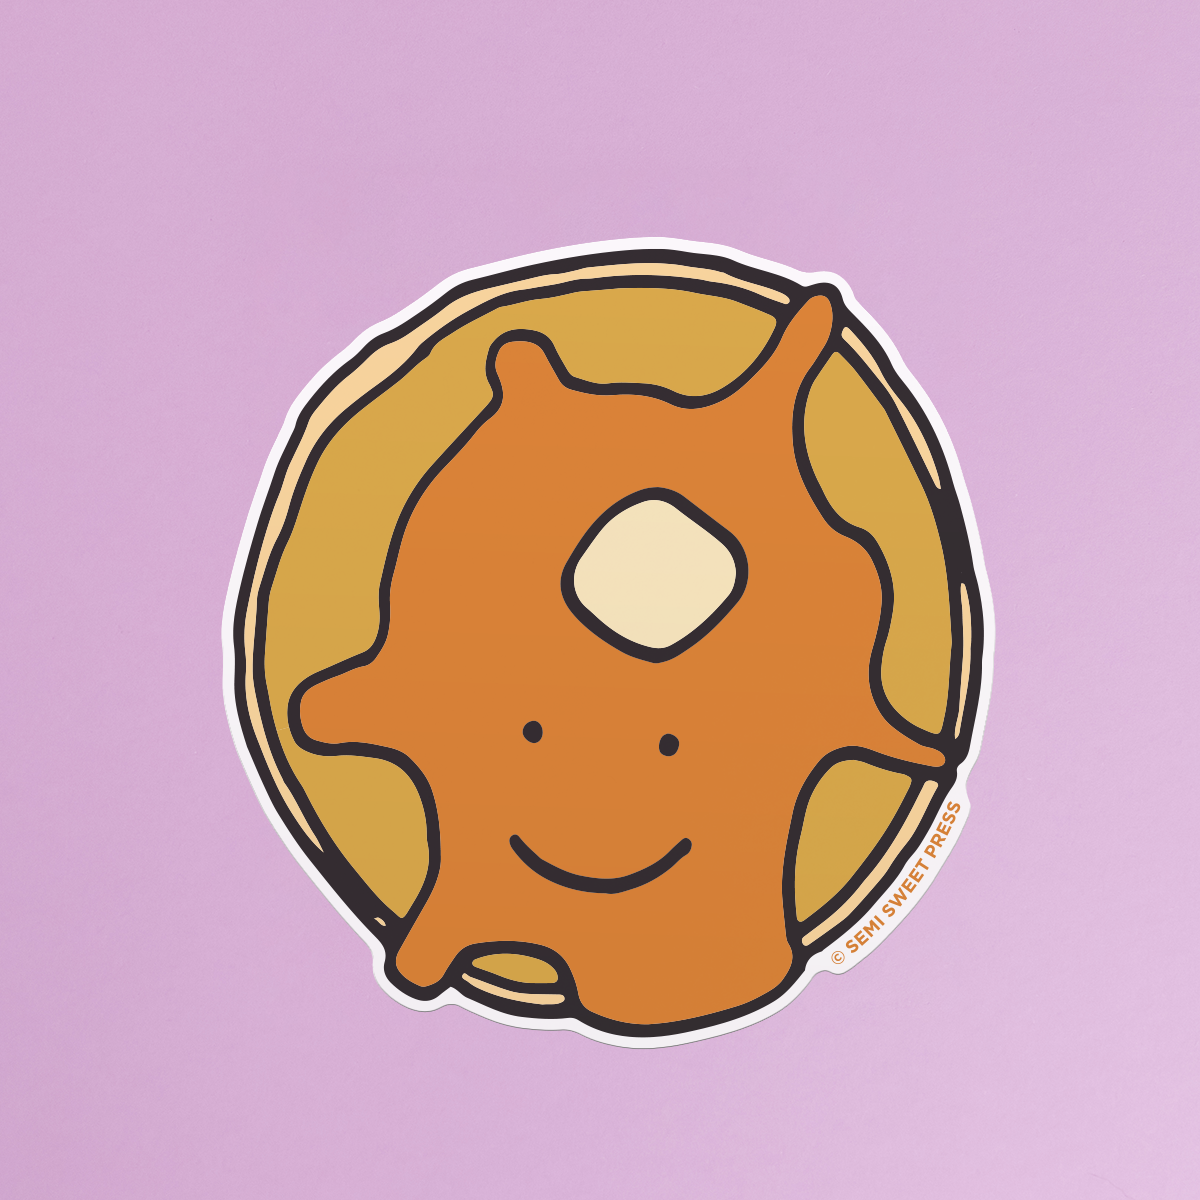 Pancake sticker